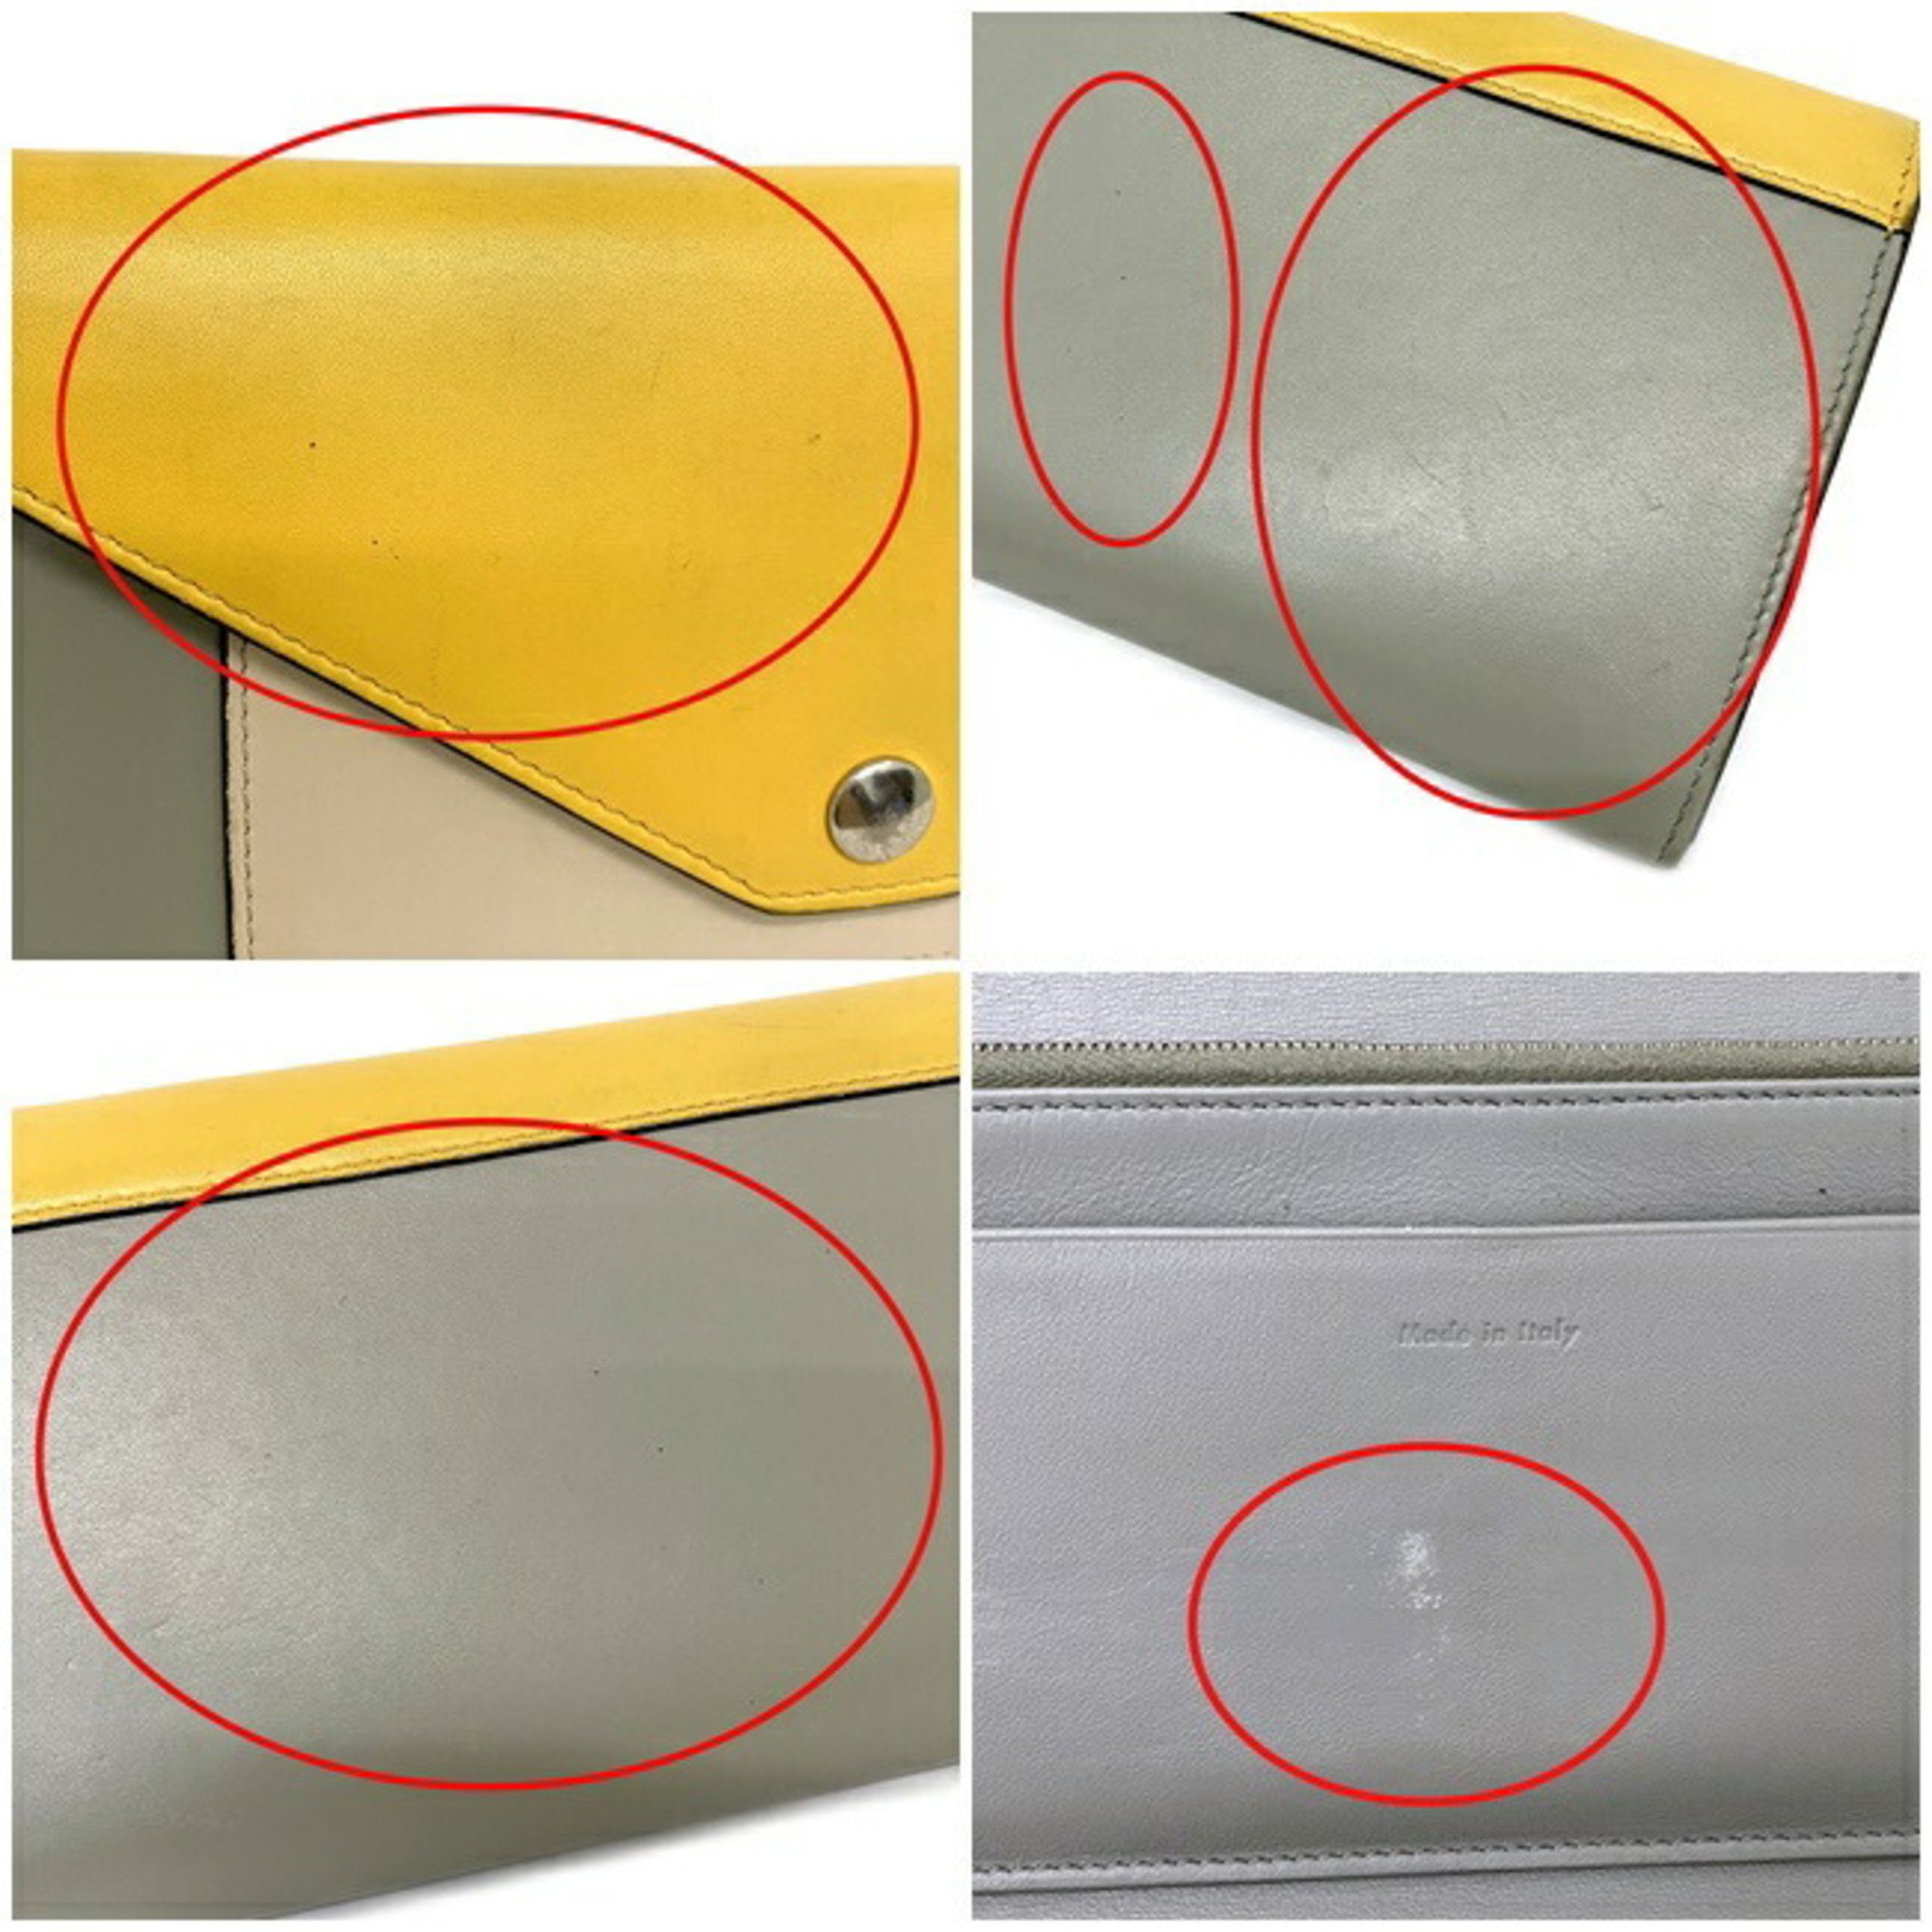 Celine Tri-Fold Wallet Trifold Multifunction Yellow Gray Beige 105853 Leather CELINE Calfskin Women's Genuine